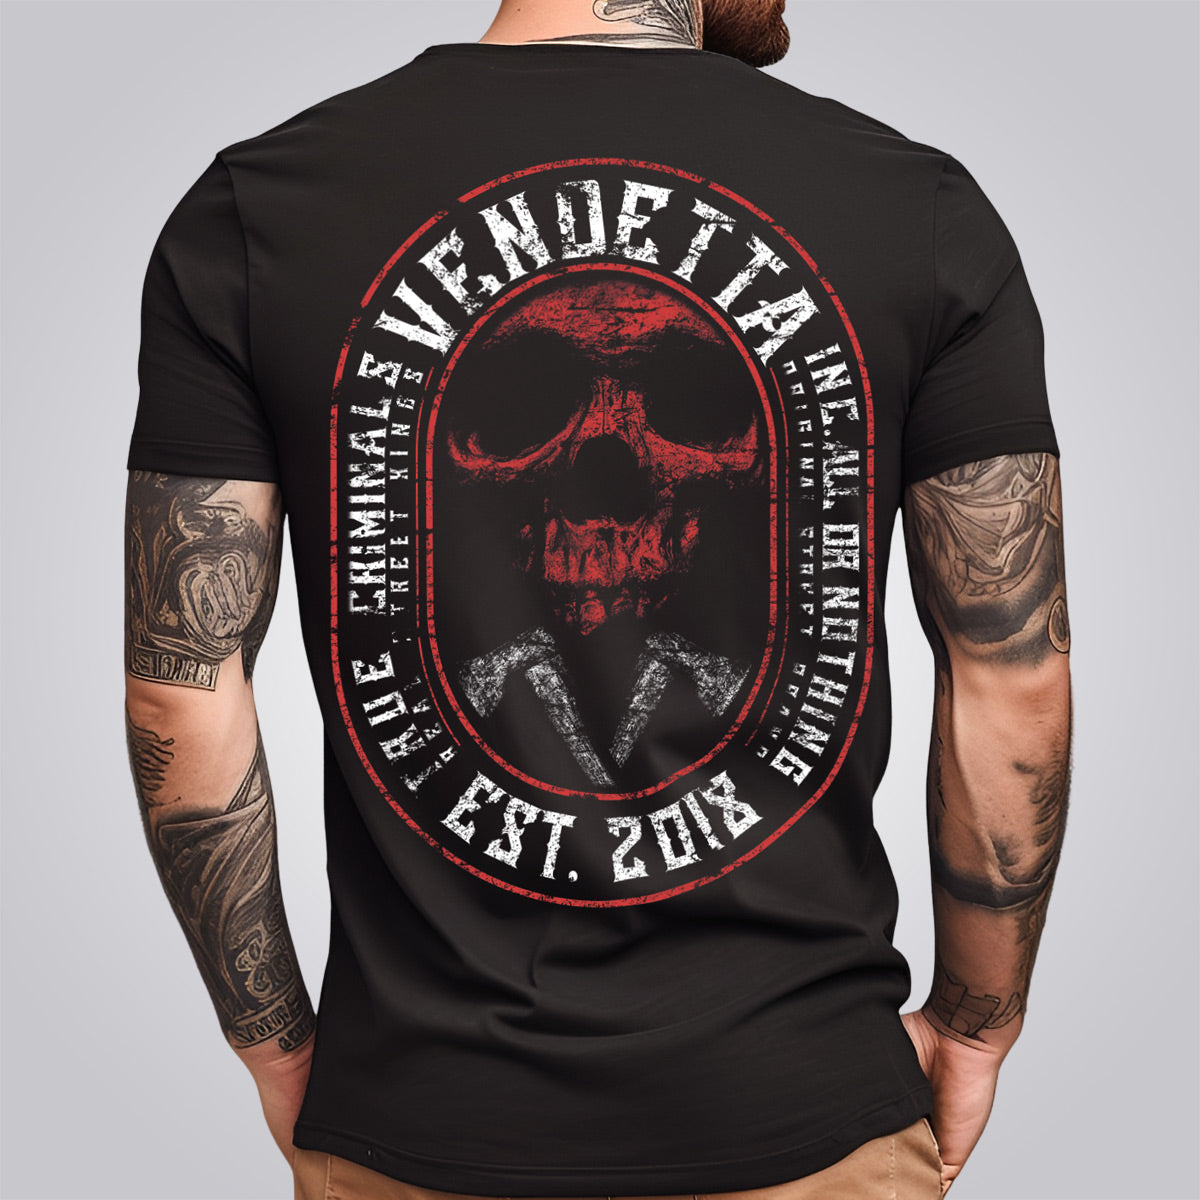 Vendetta Inc. Men's Shirt Skull Crime black VD-1314